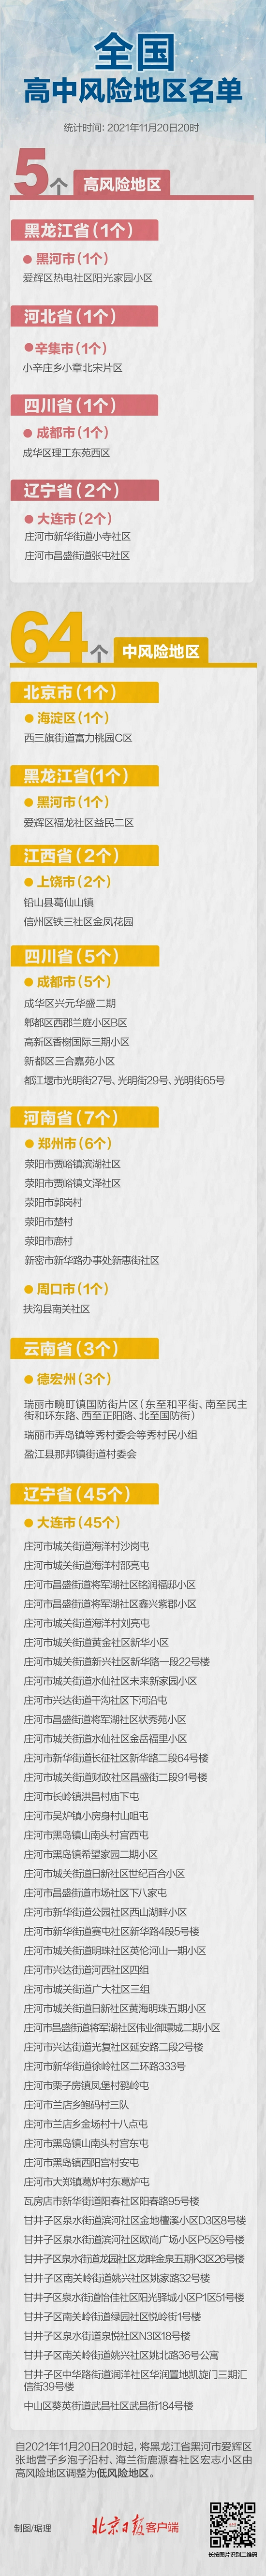 最新！黑龙江高风险区-2，全国现有高中风险区5+64个 (http://www.zjmmc.cn/) 新闻 第1张